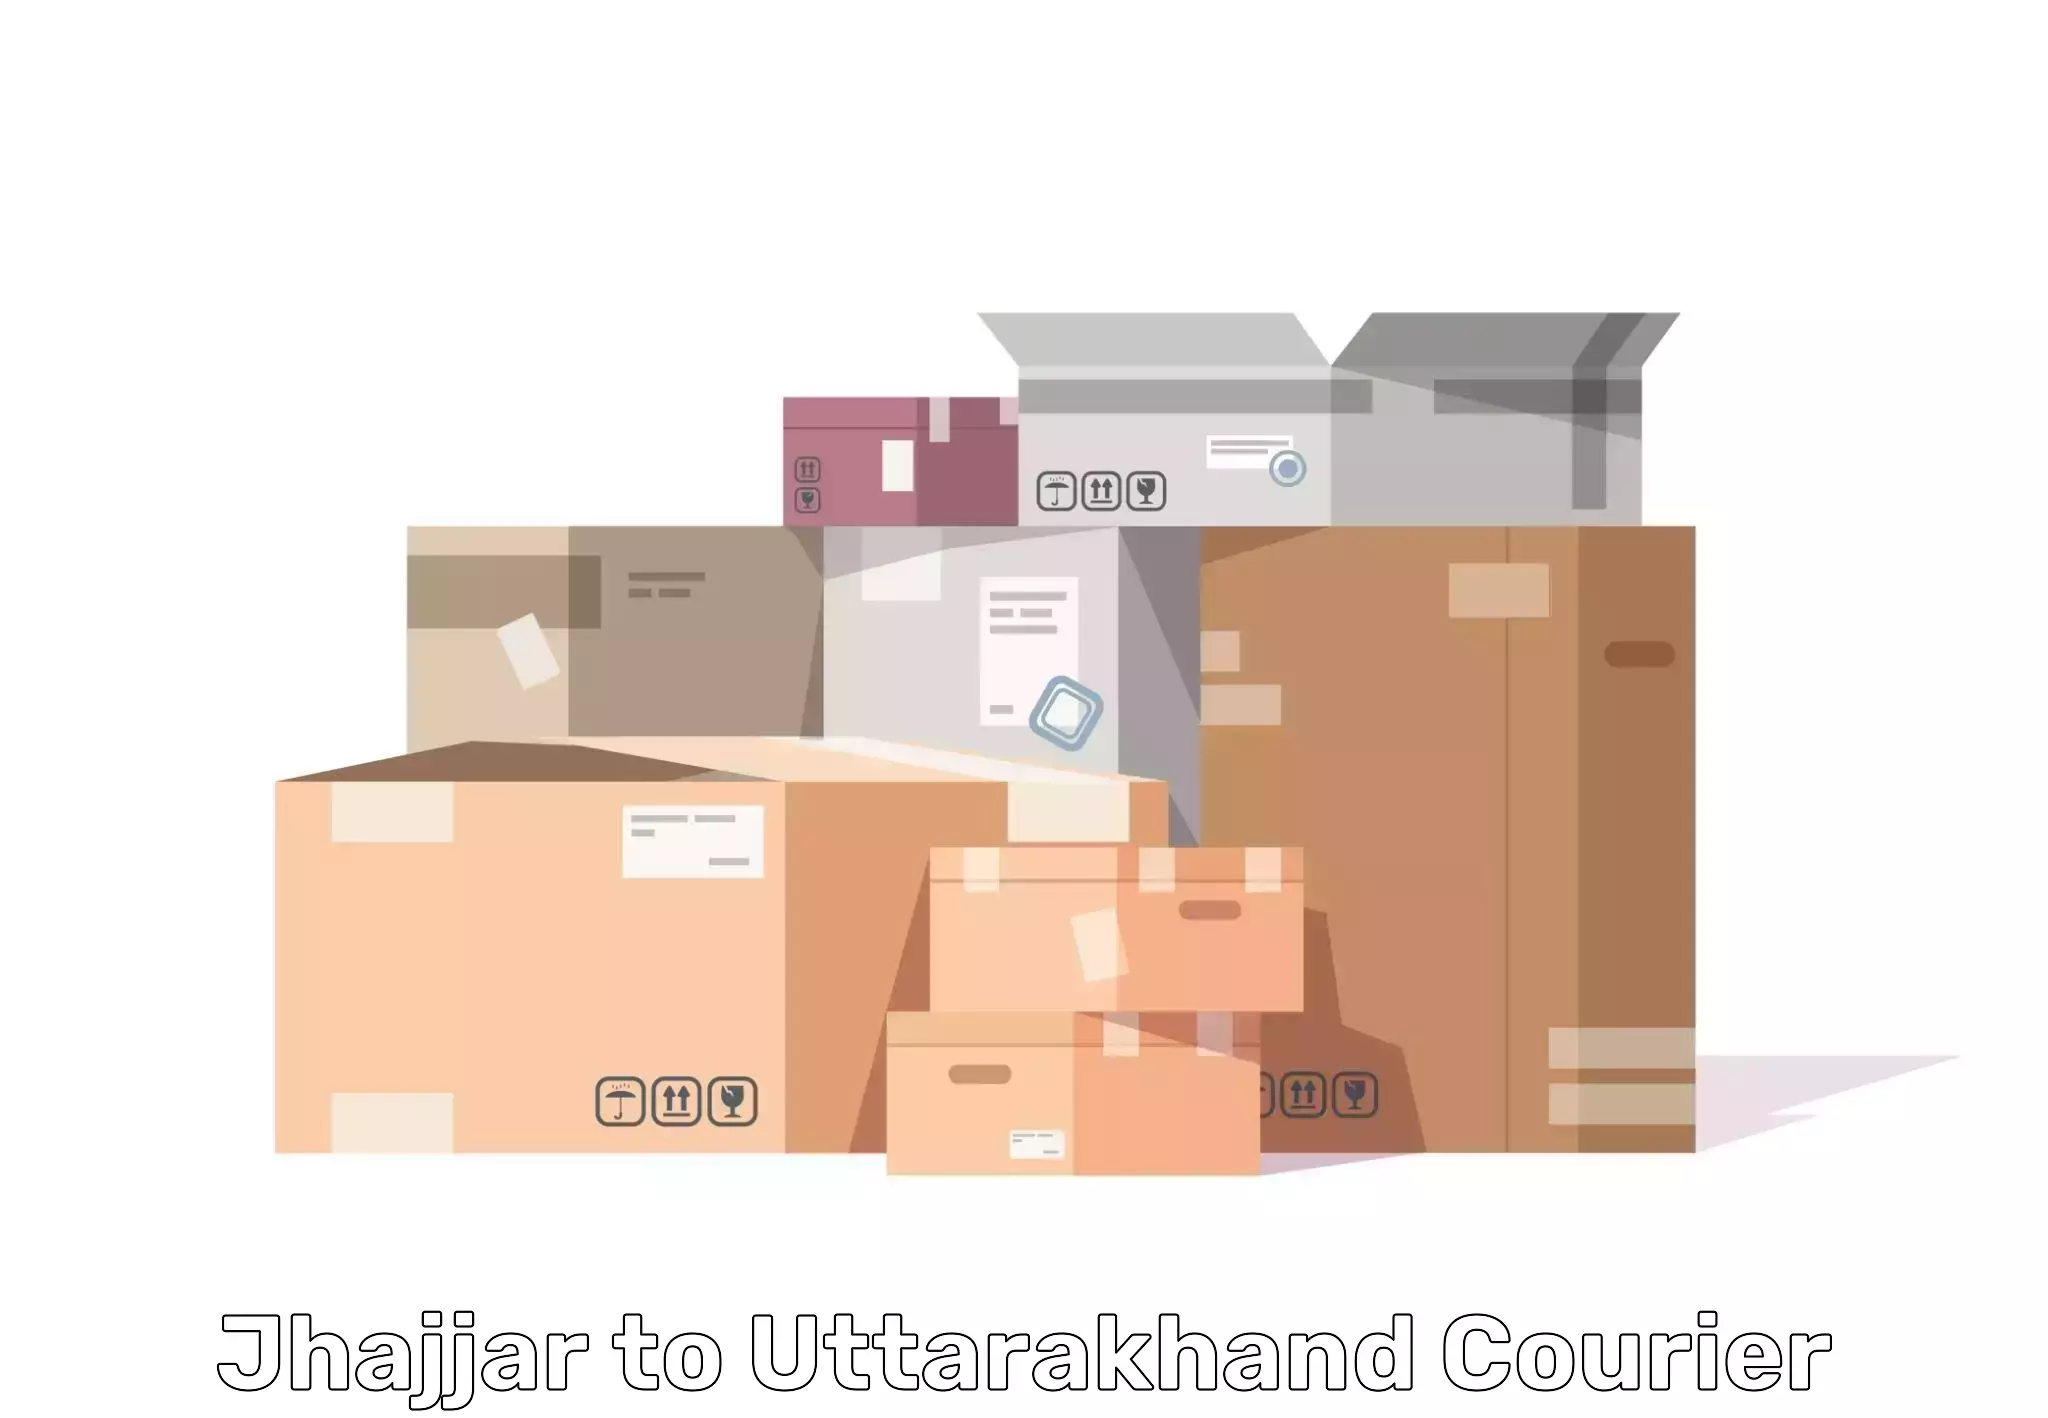 Home goods moving company Jhajjar to Nainital